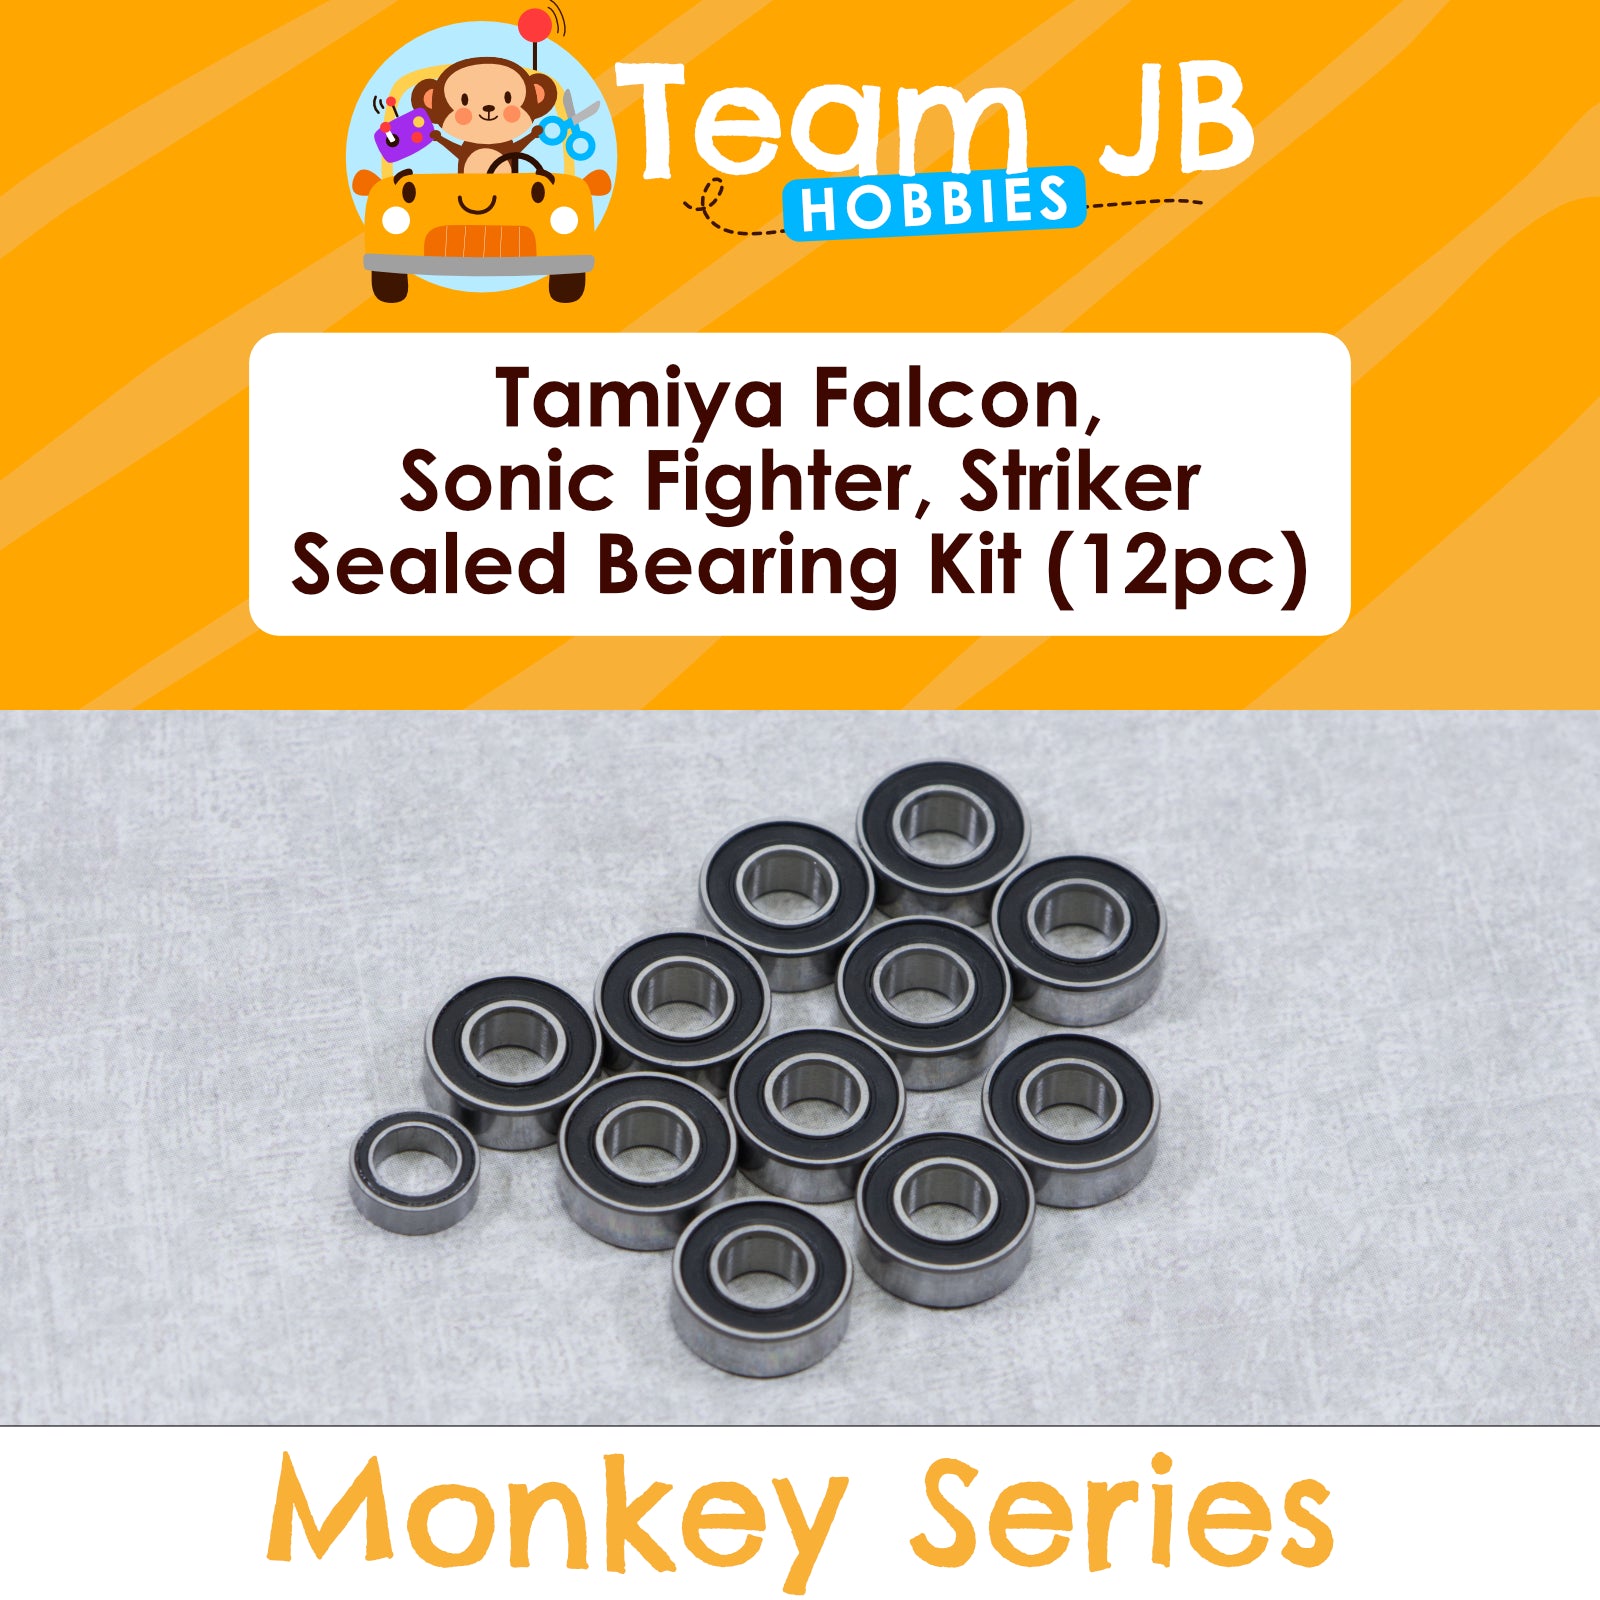 Tamiya Falcon, Sonic Fighter, Striker - Sealed Bearing Kit